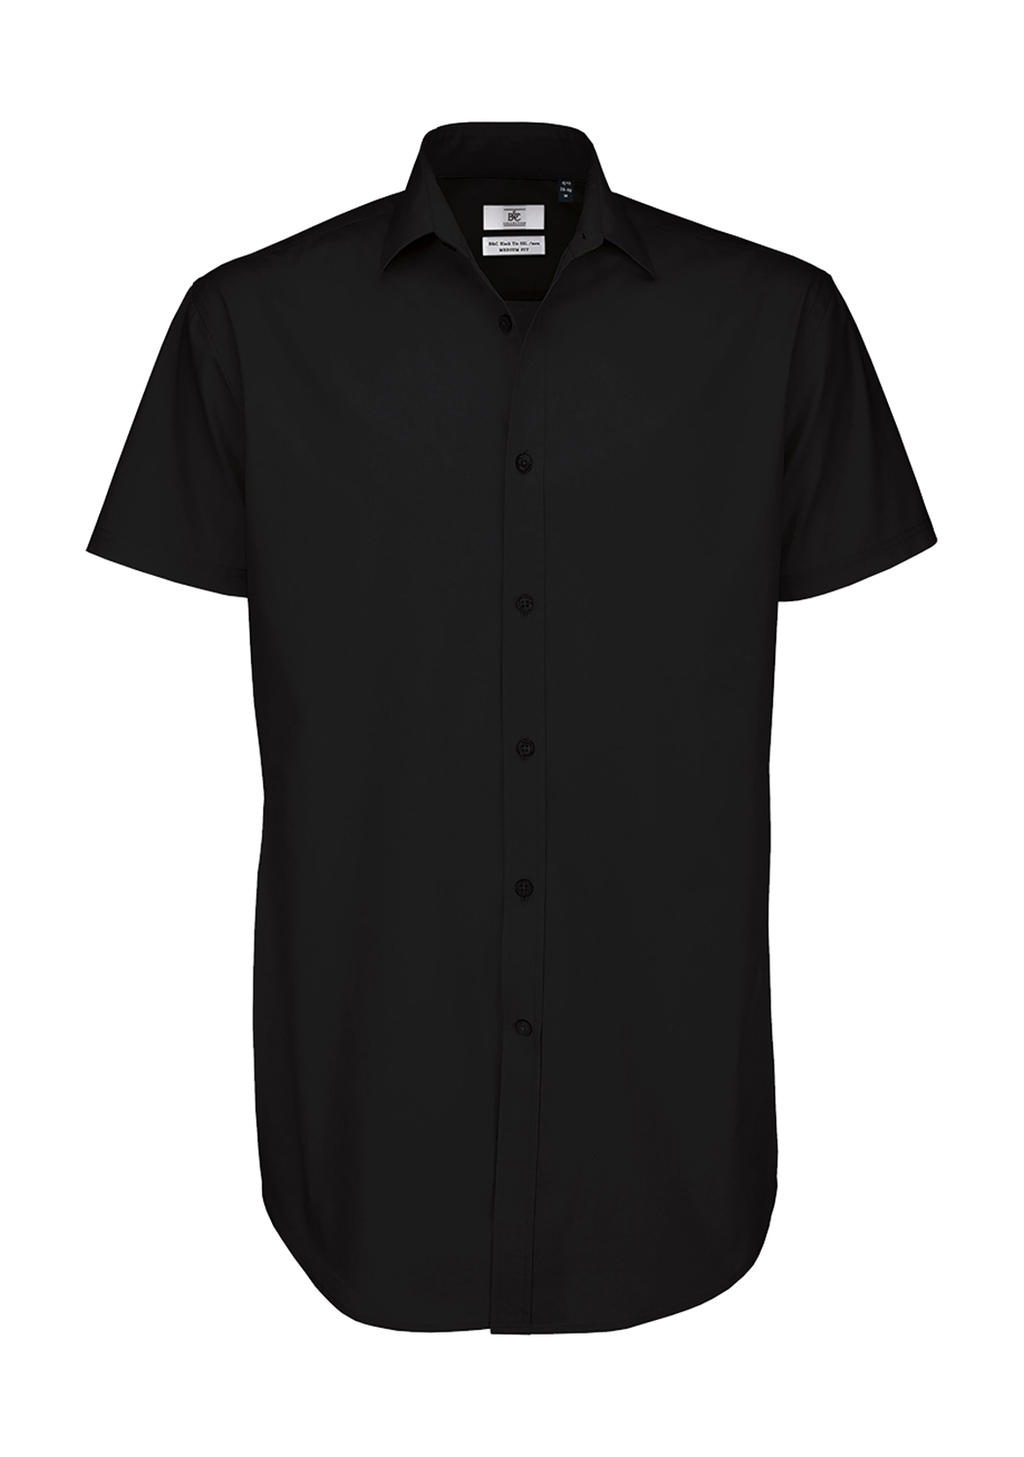  Black Tie SSL/men Poplin Shirt in Farbe Black